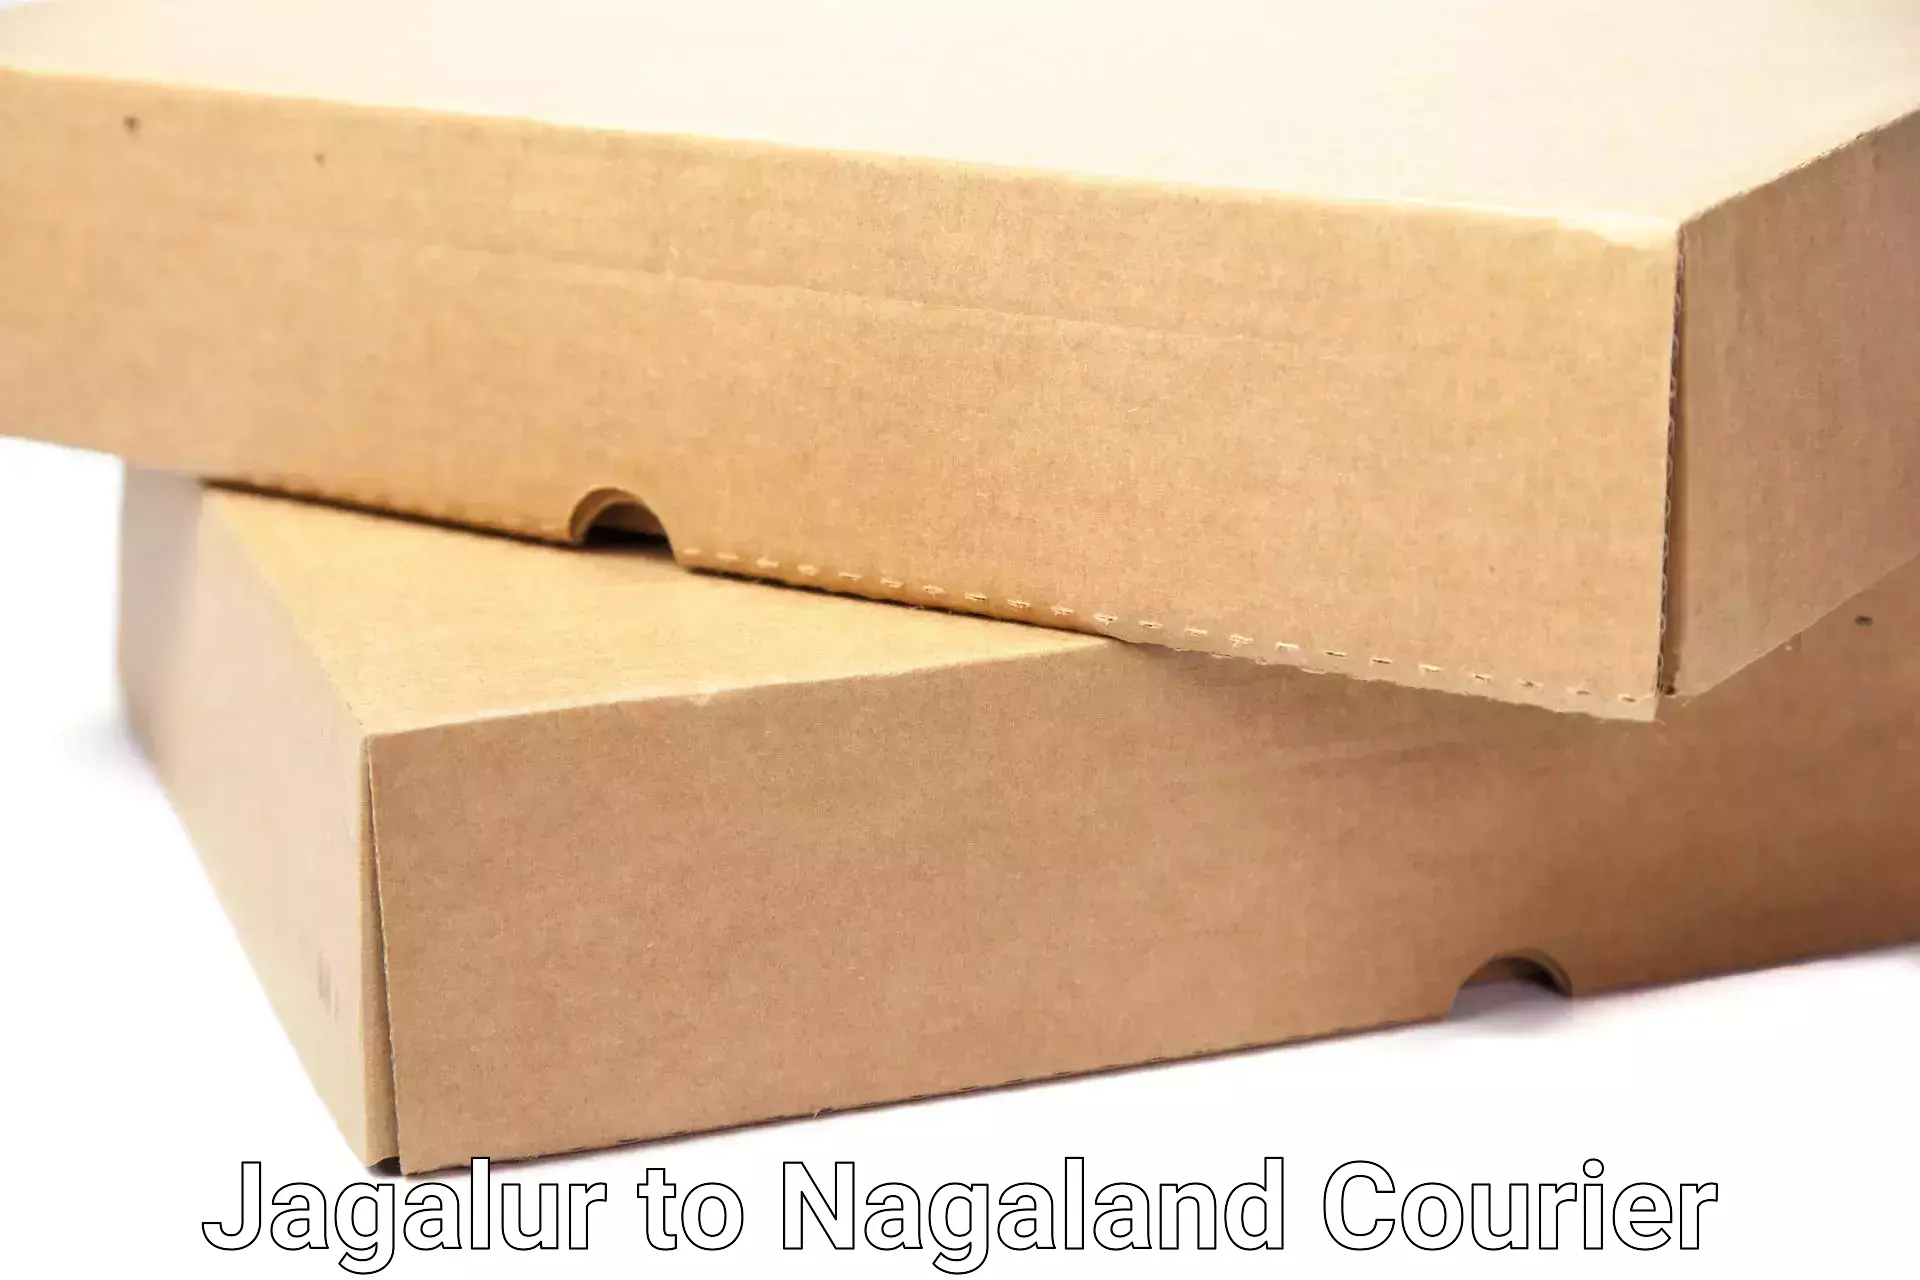 Stress-free moving Jagalur to Nagaland